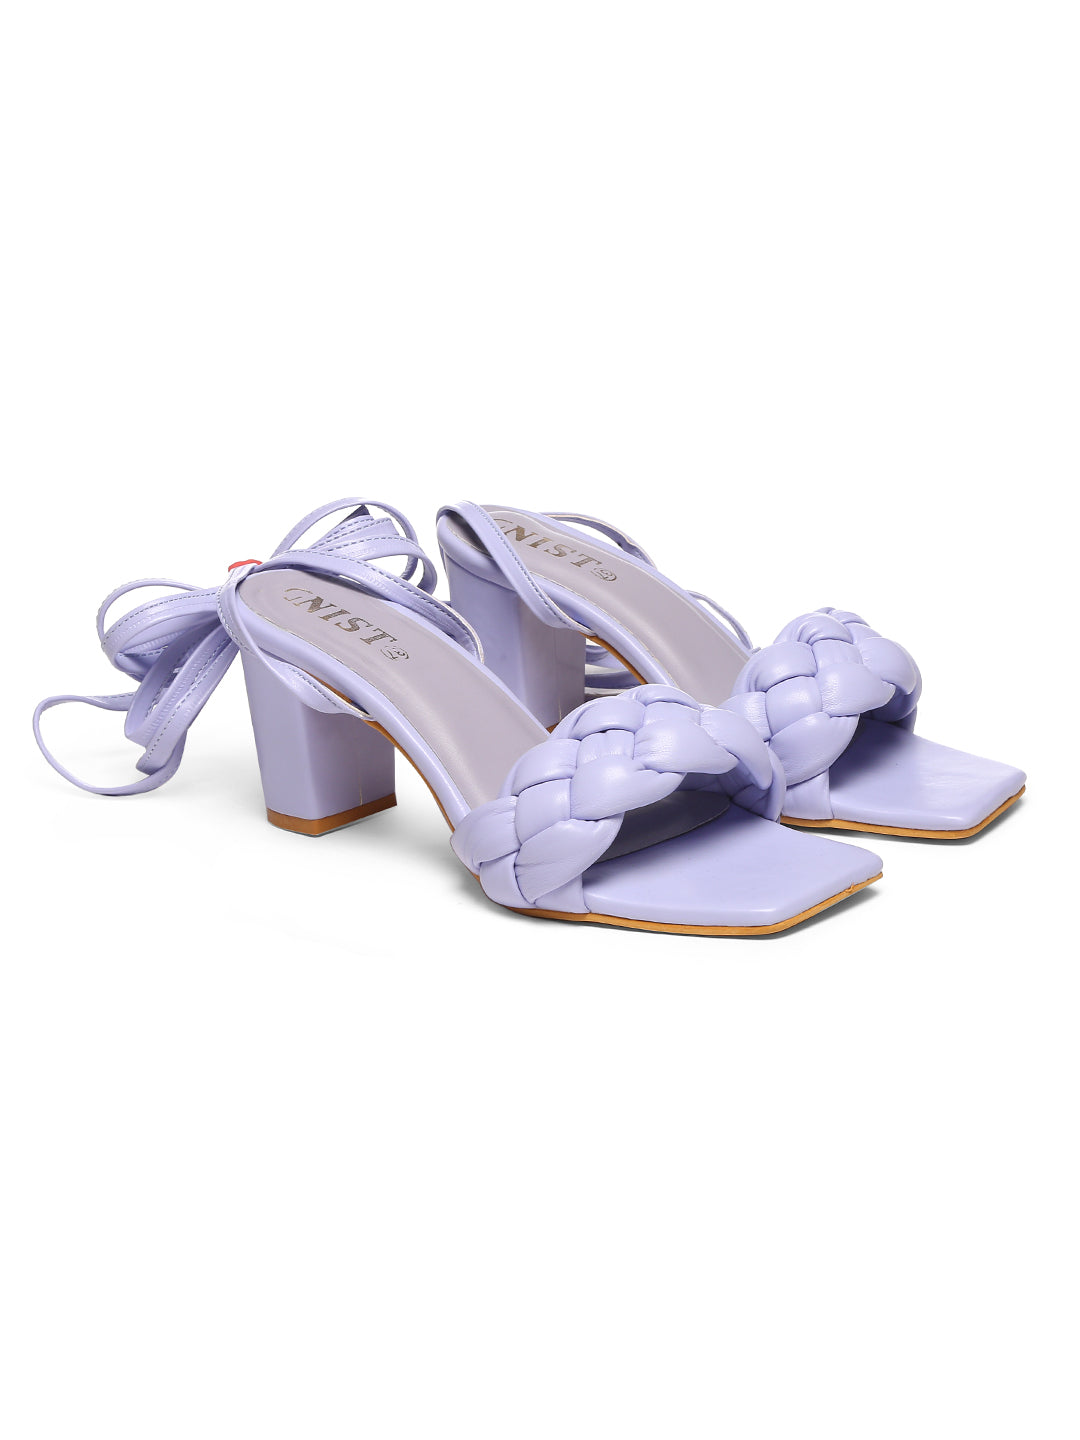 GNIST Lavender Braided Tie up Block Heel Sandal